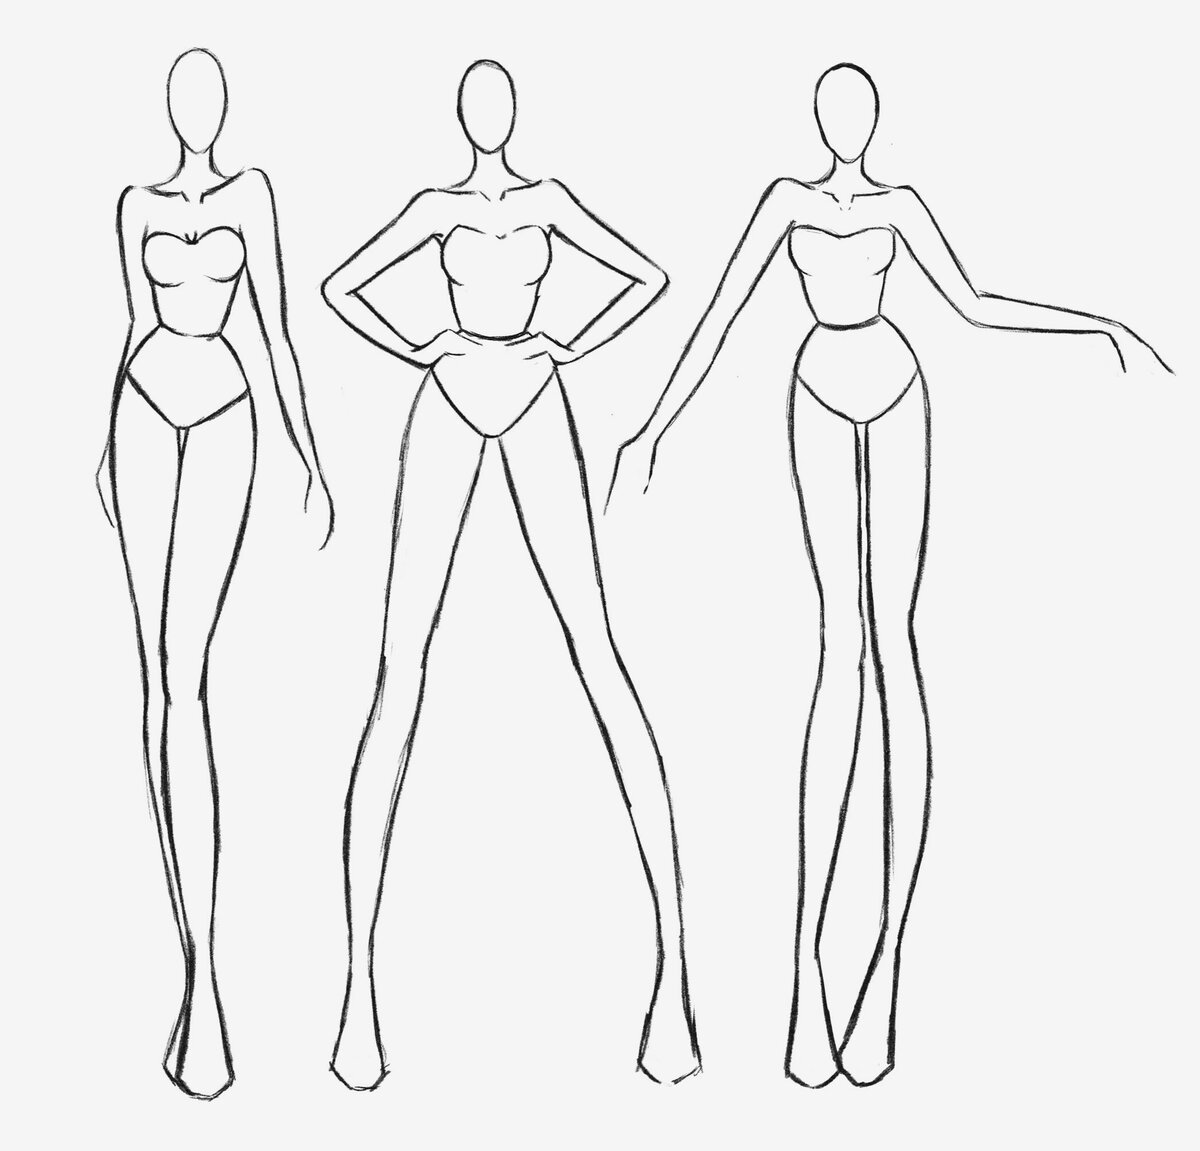 Фигура для моделирования одежды